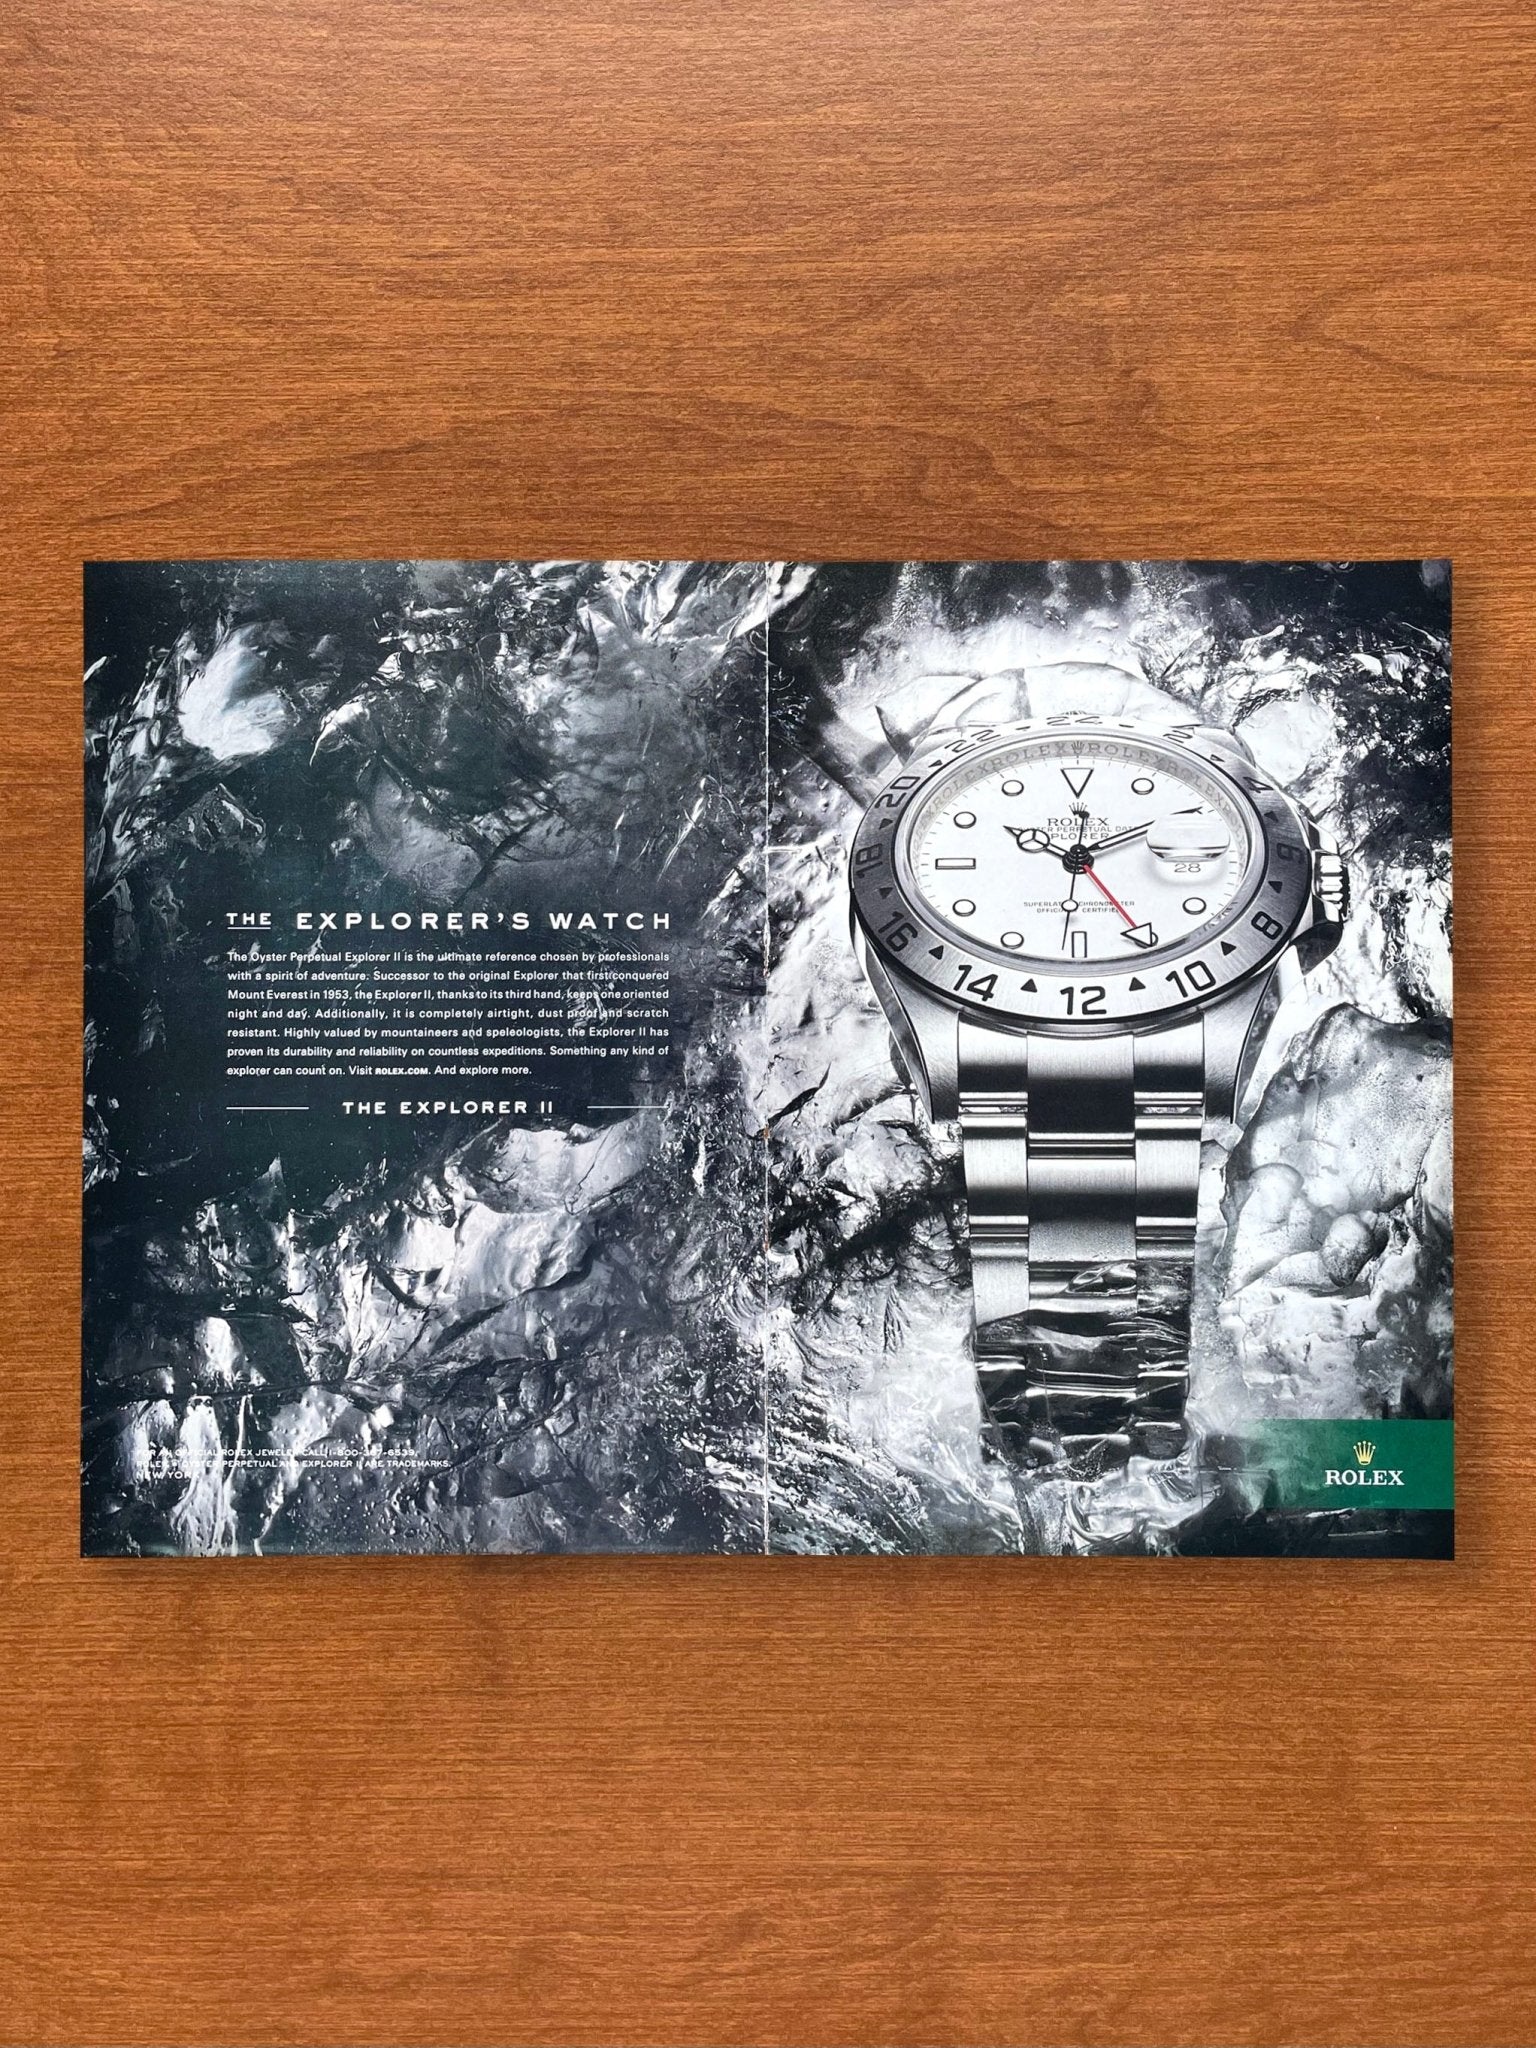 2009 Rolex Explorer II Ref. 16570 "The Explorer's Watch" Advertisement